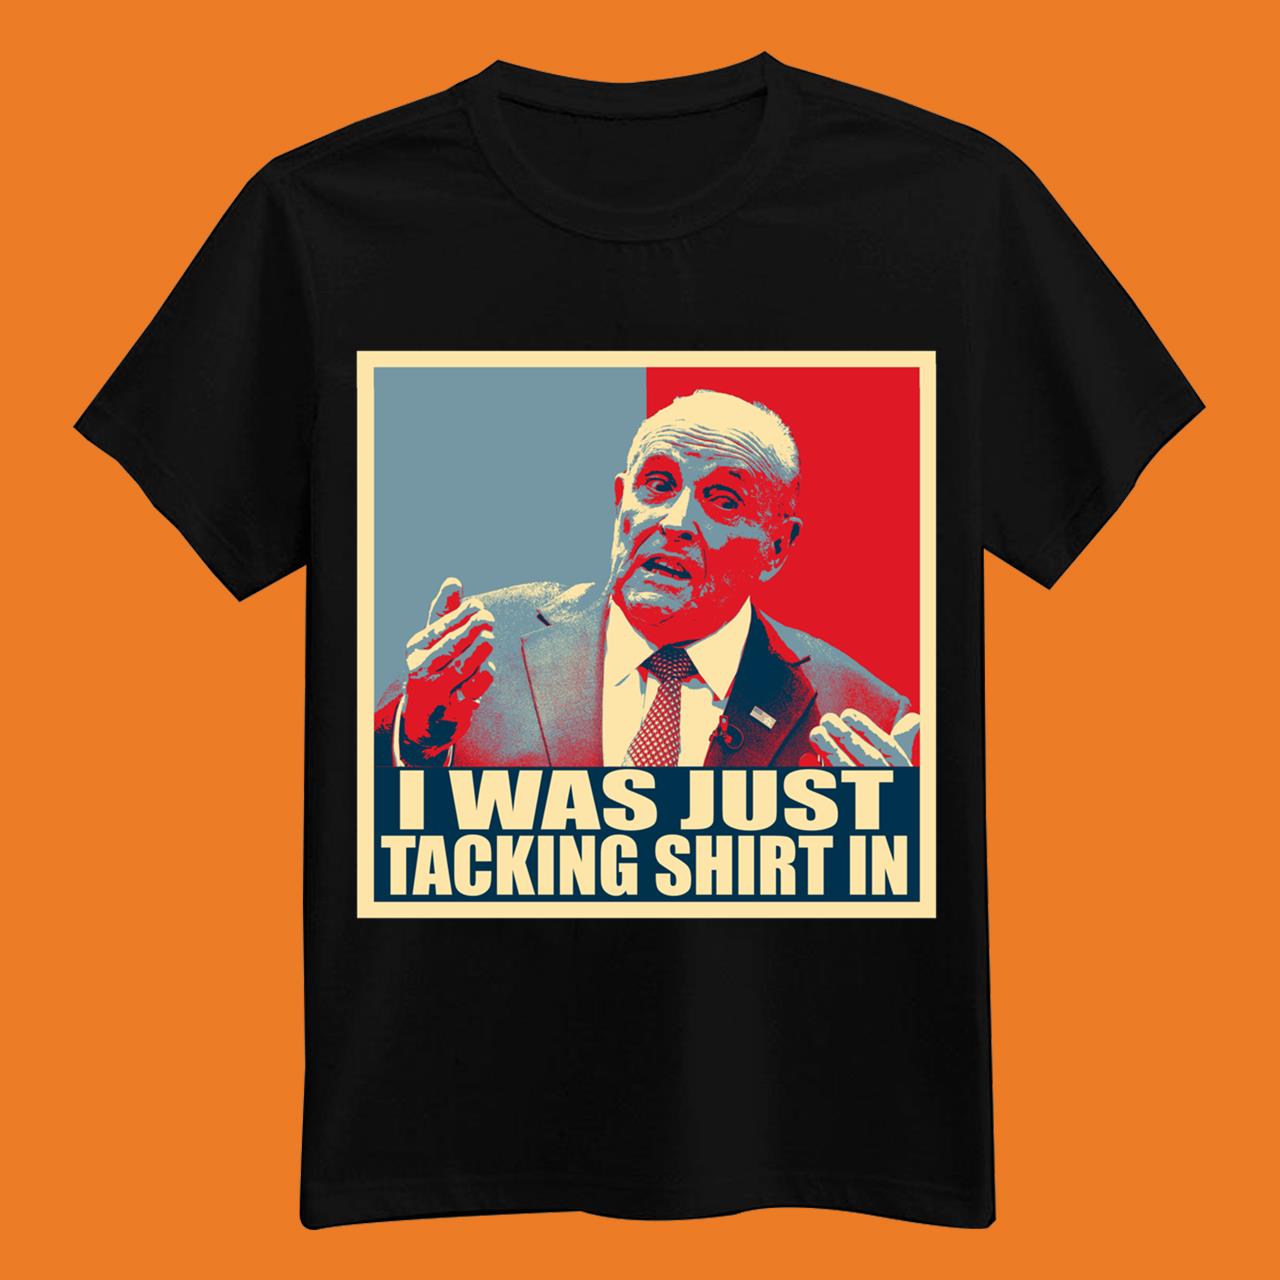 Rudy Giuliani Tacking Meme Shirt